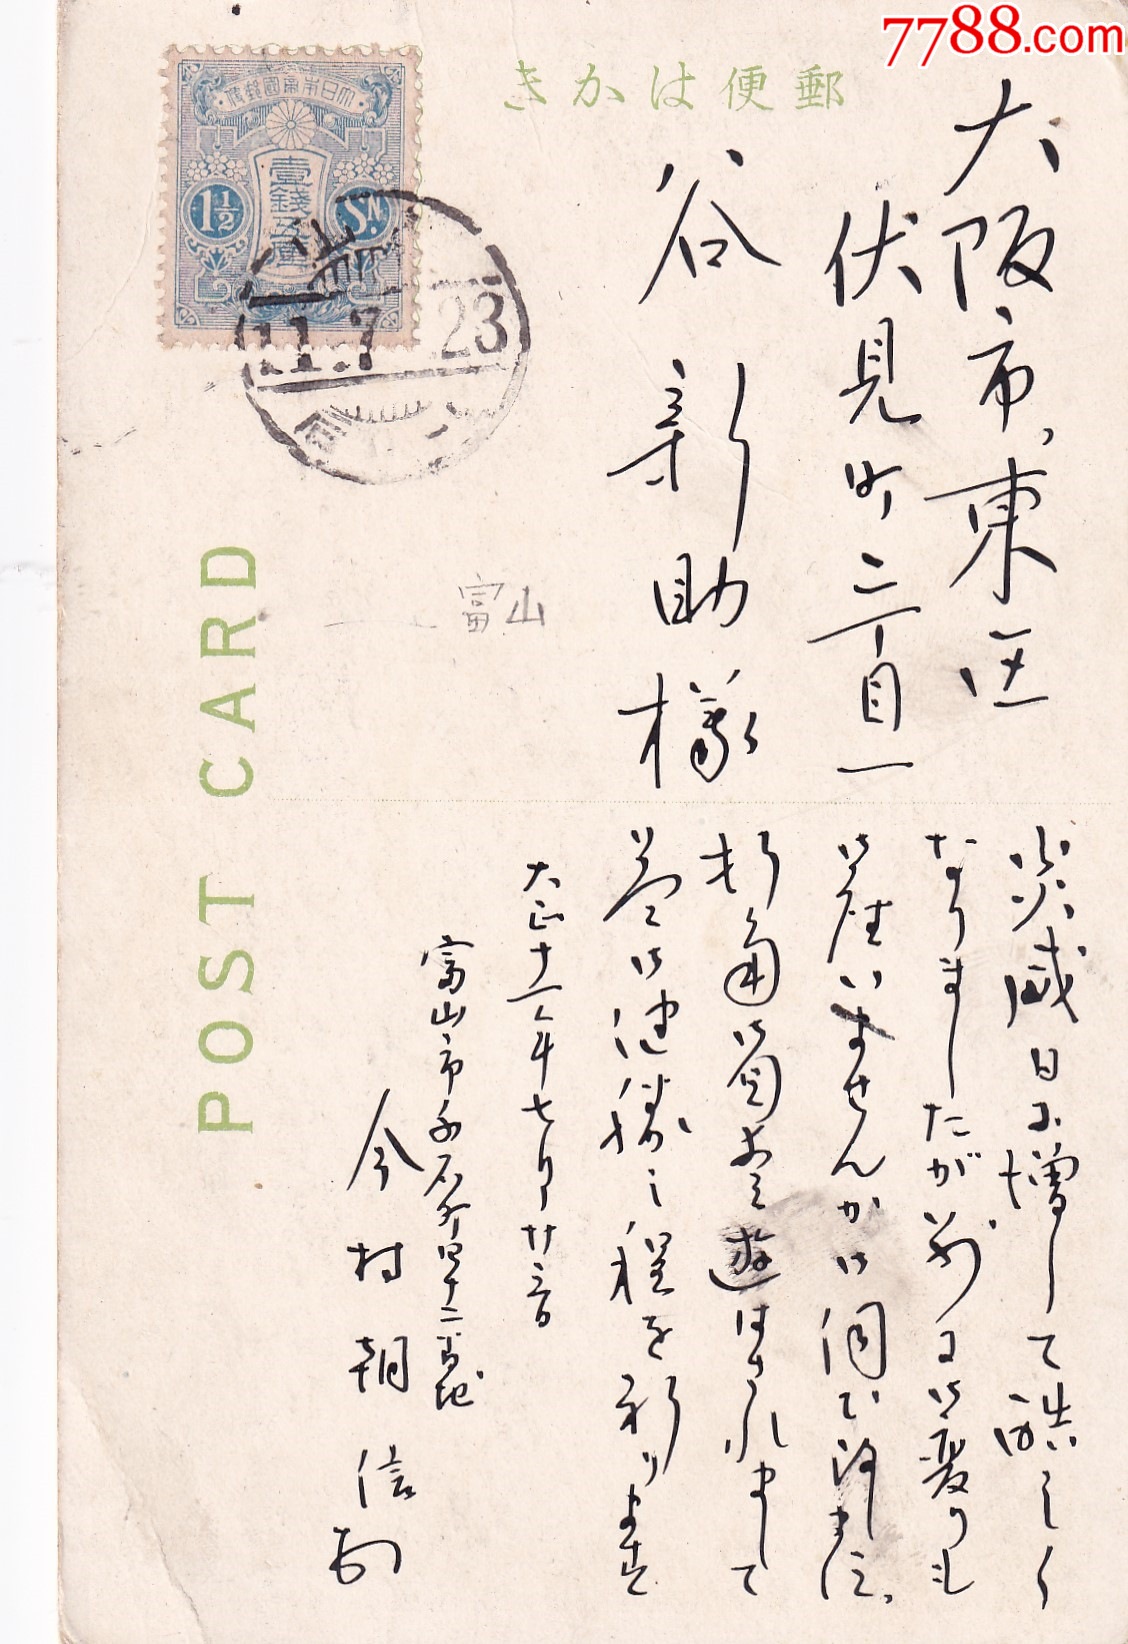 寄一張風景給你！如何從日本寄國際明信片？格式寫法超簡單教學 - 白雪姬 喫趣玩